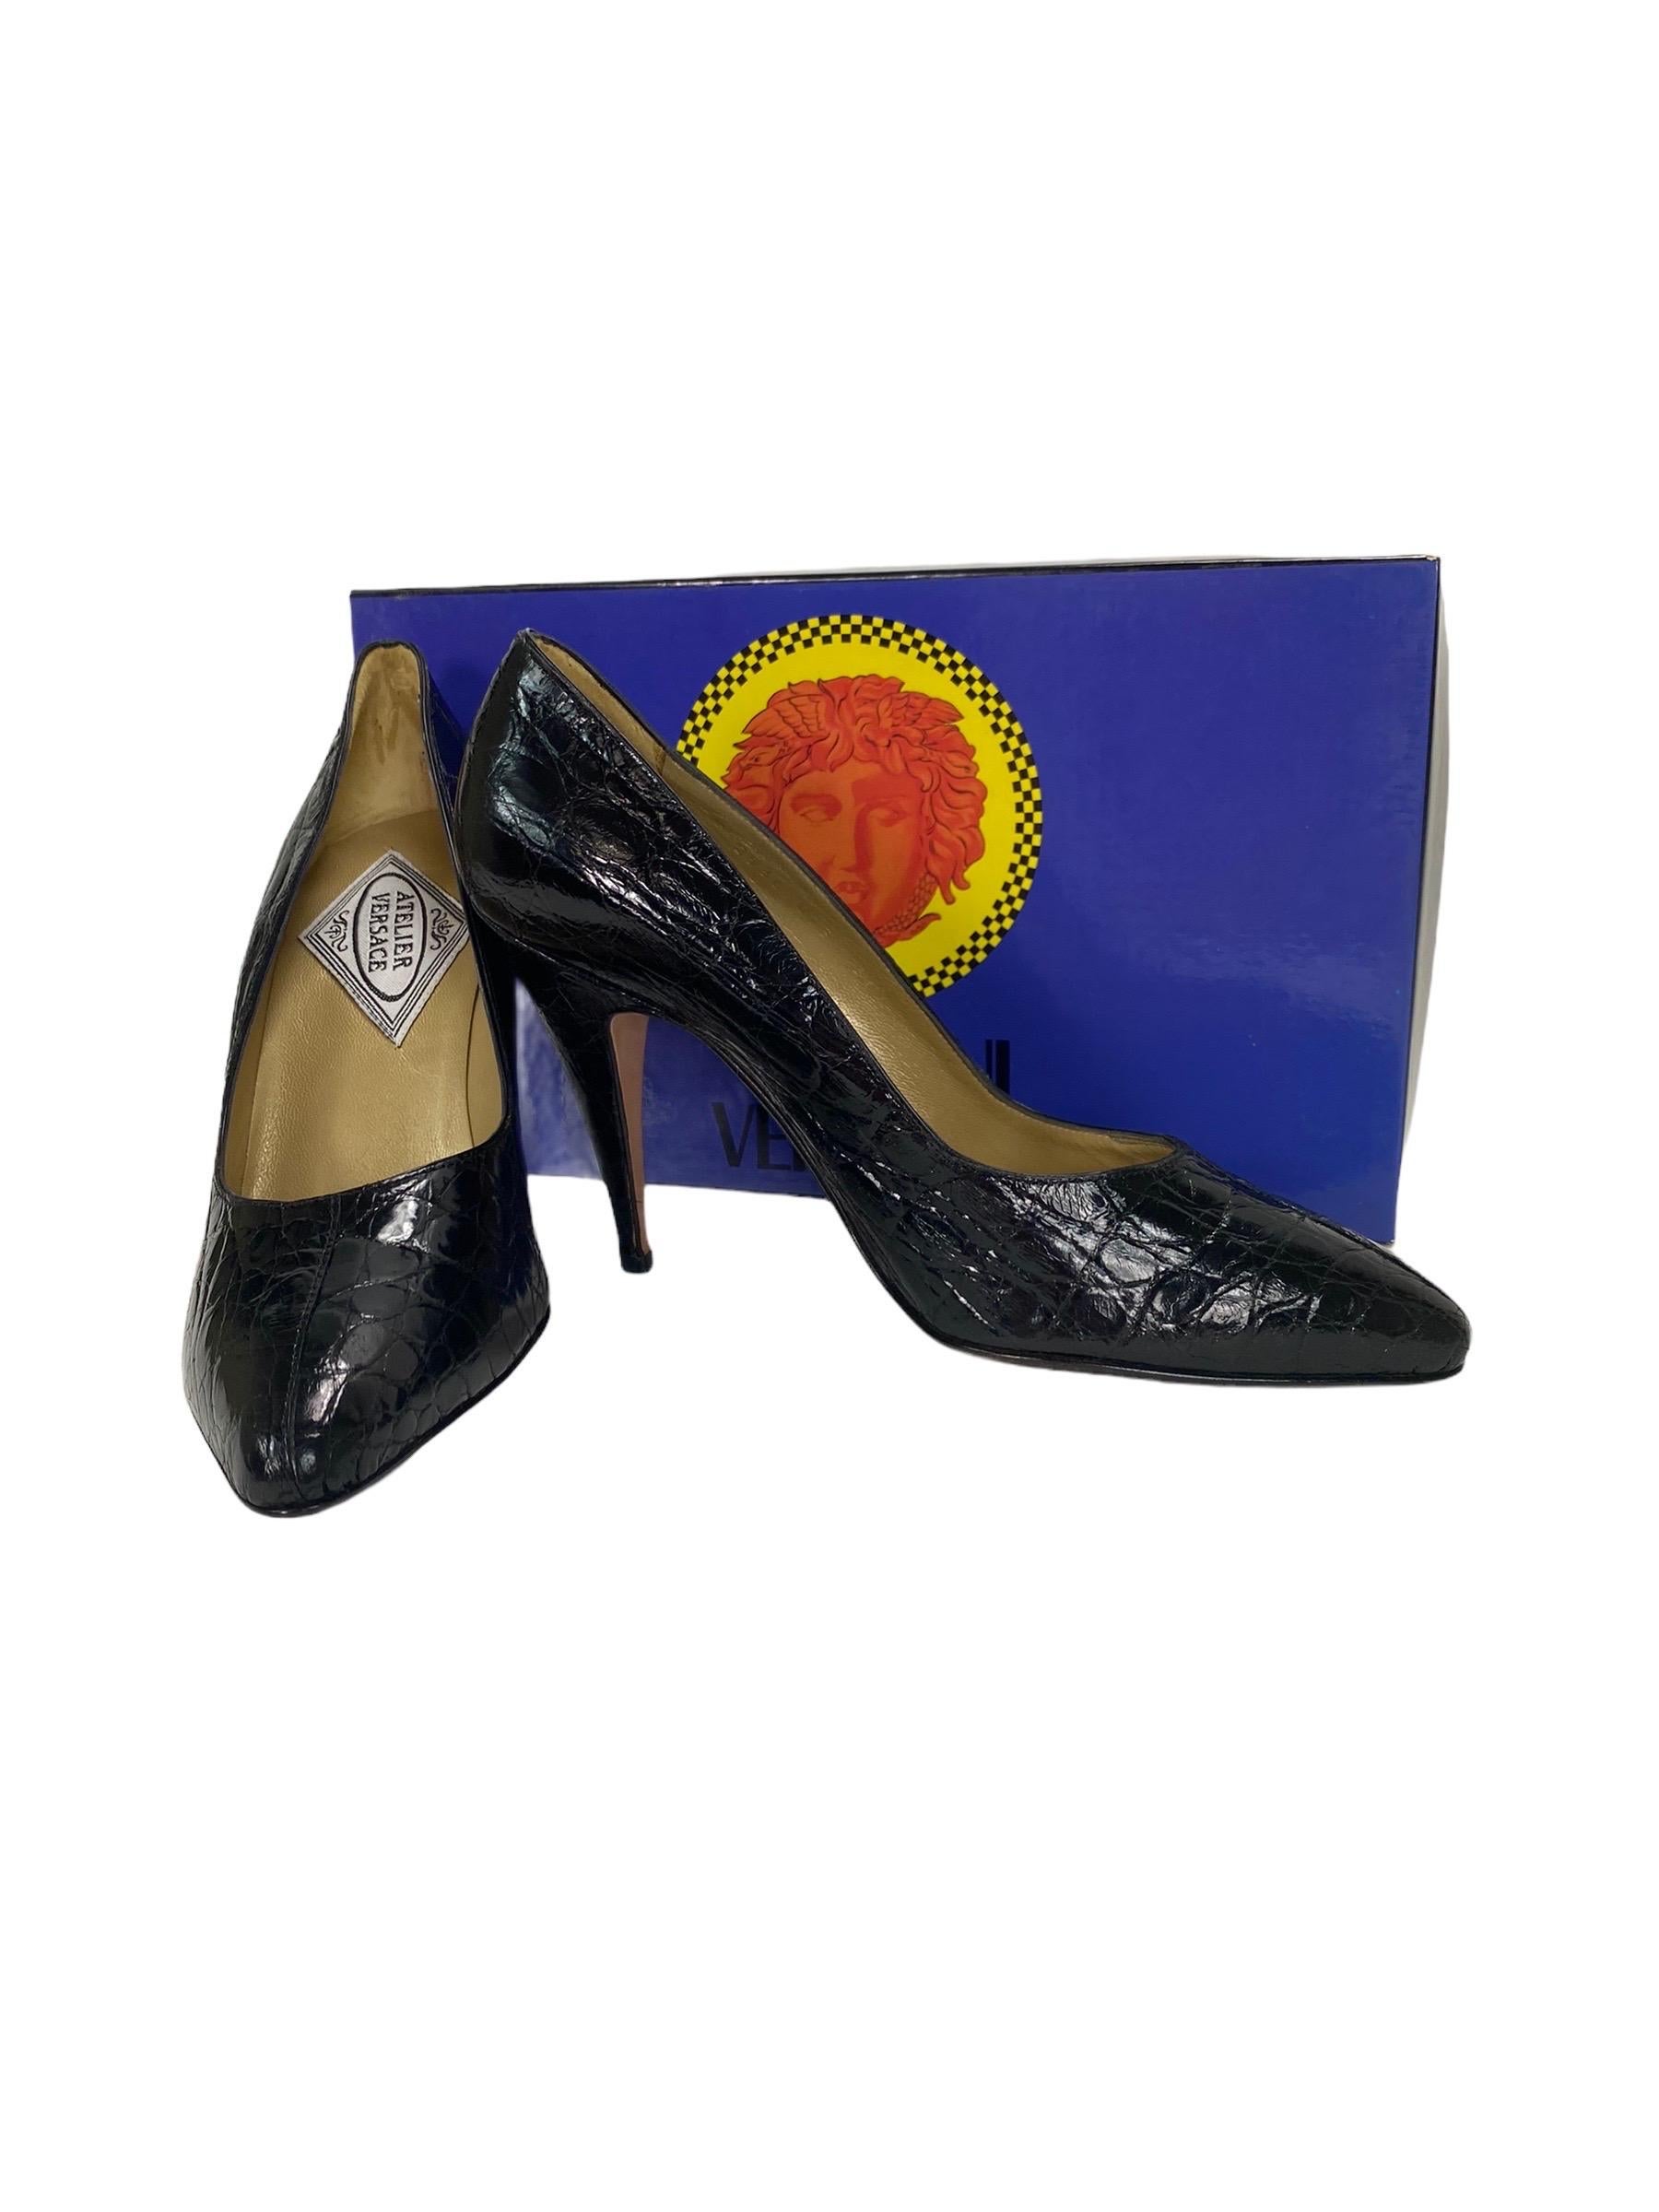 1991 Vintage Versace Atelier Black Crocodile Shoes 37.5 - 7.5 NWT For Sale 1